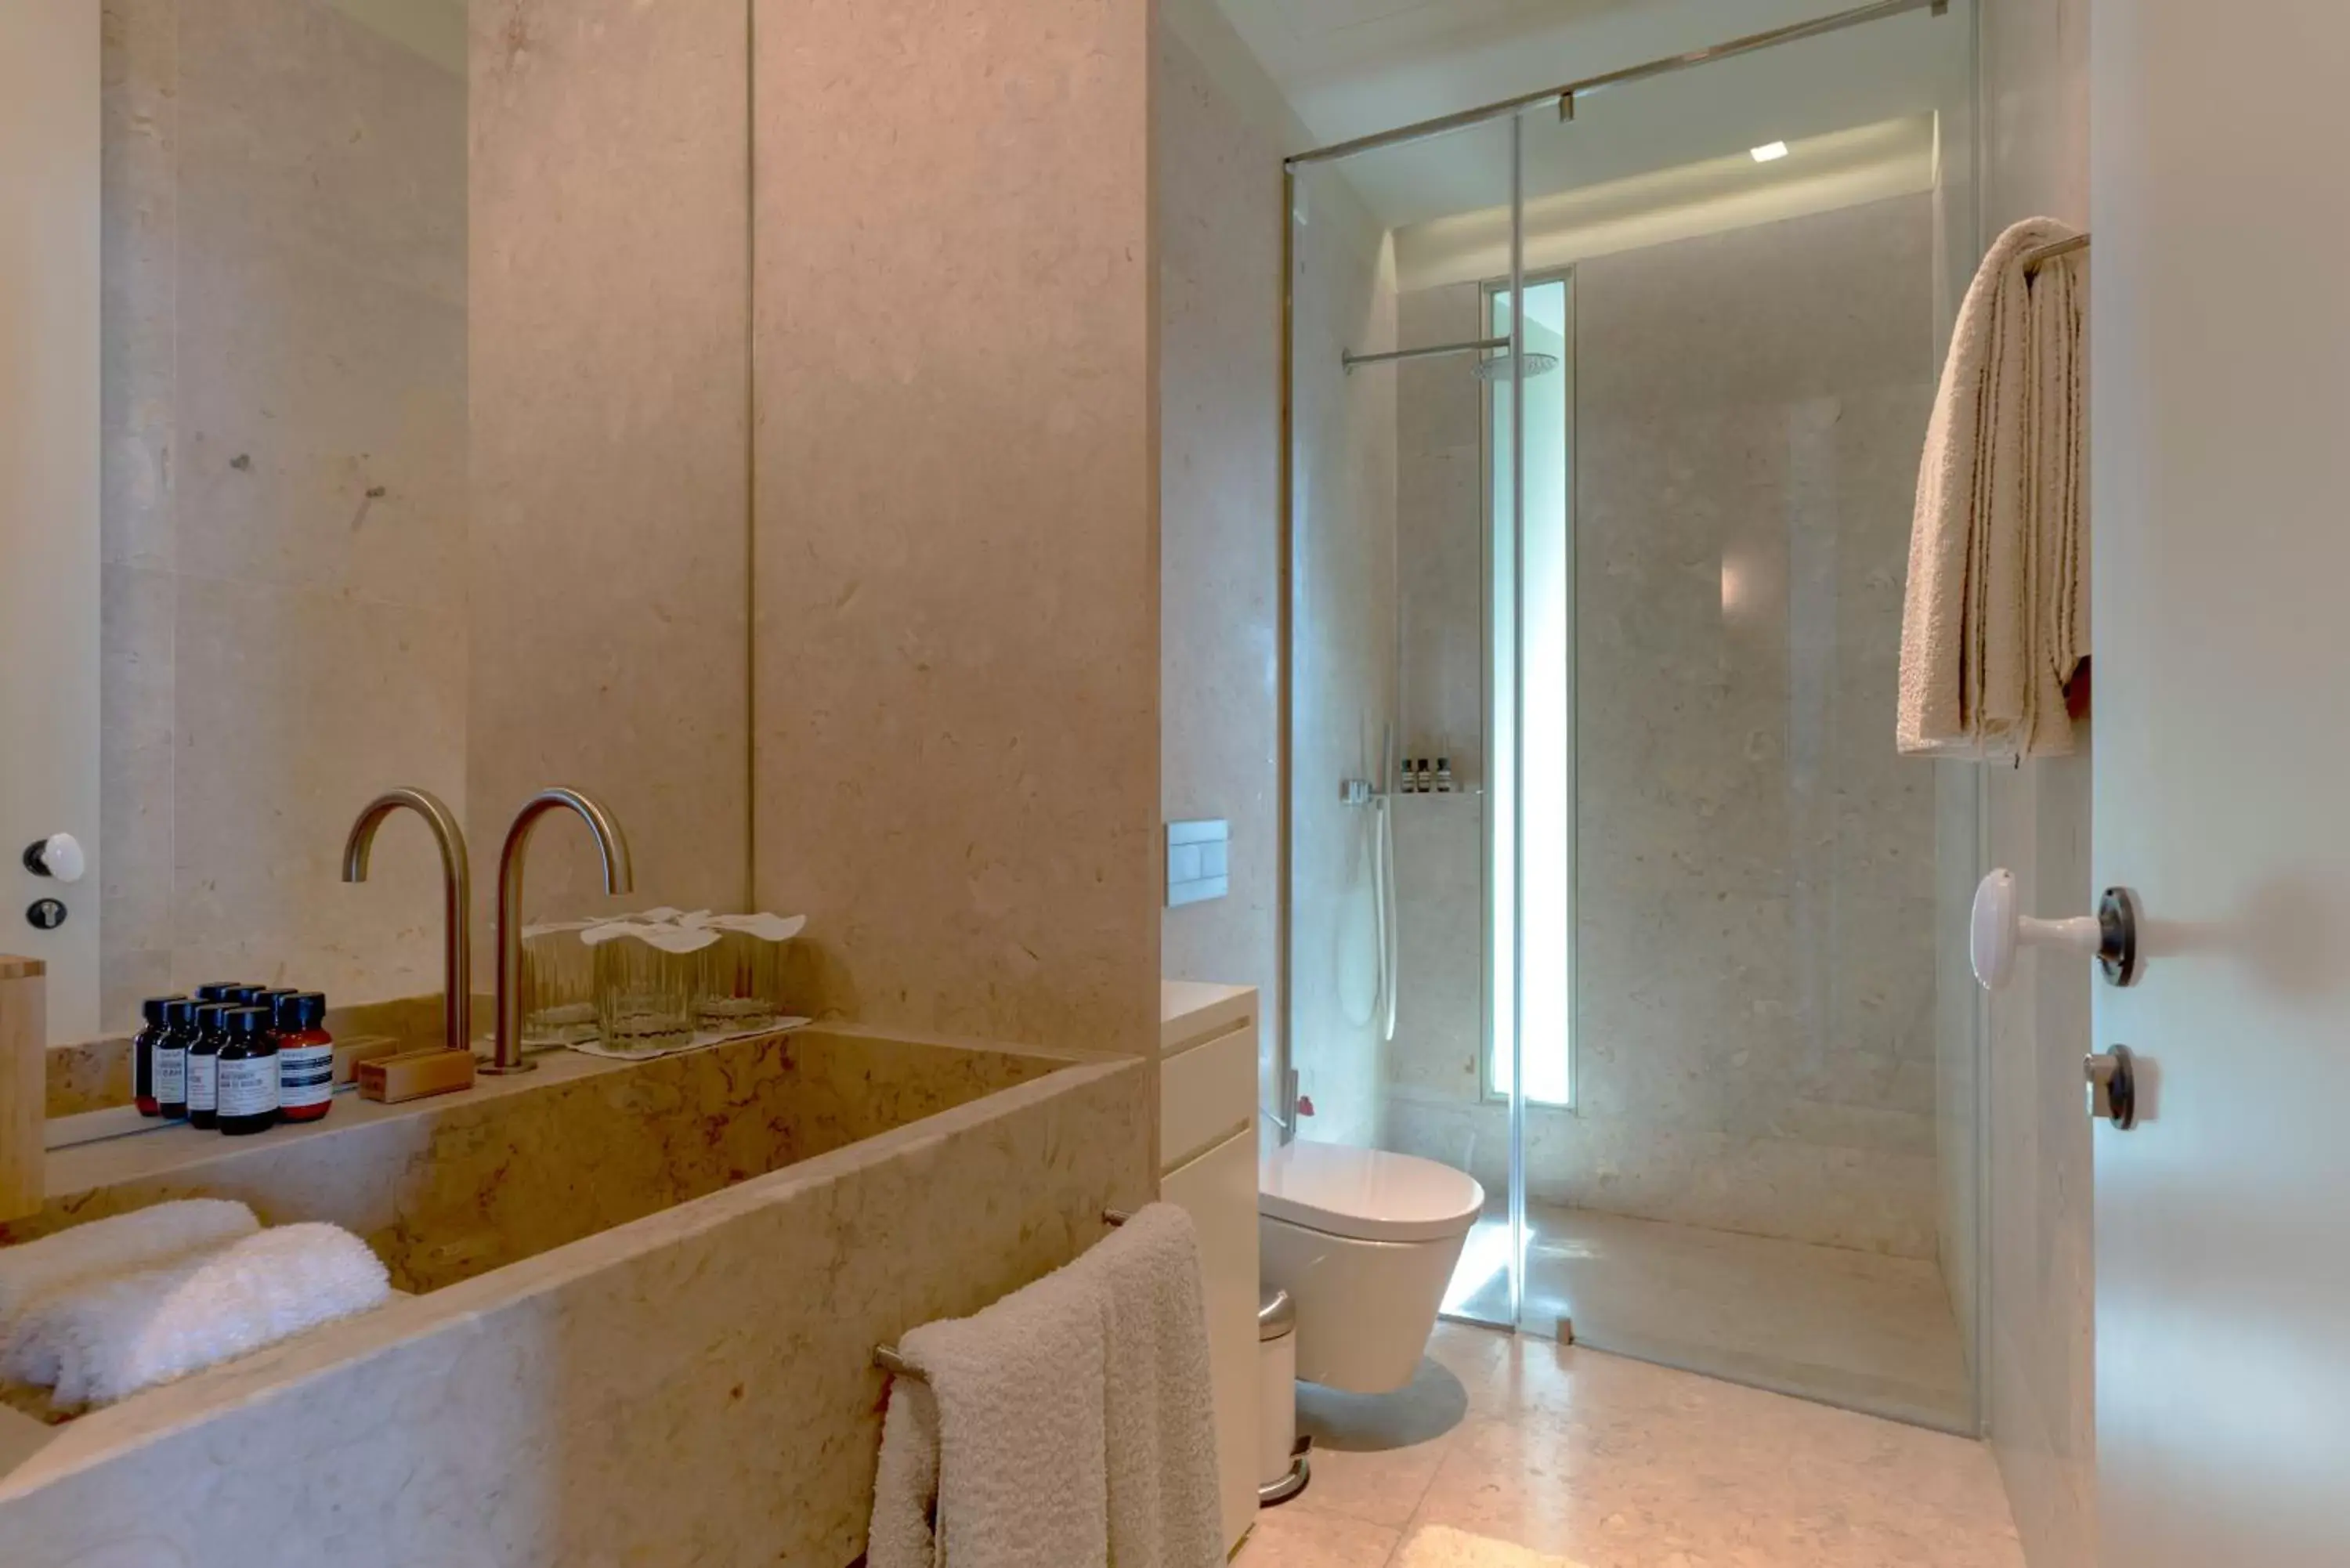 Shower, Bathroom in Verride Palácio Santa Catarina